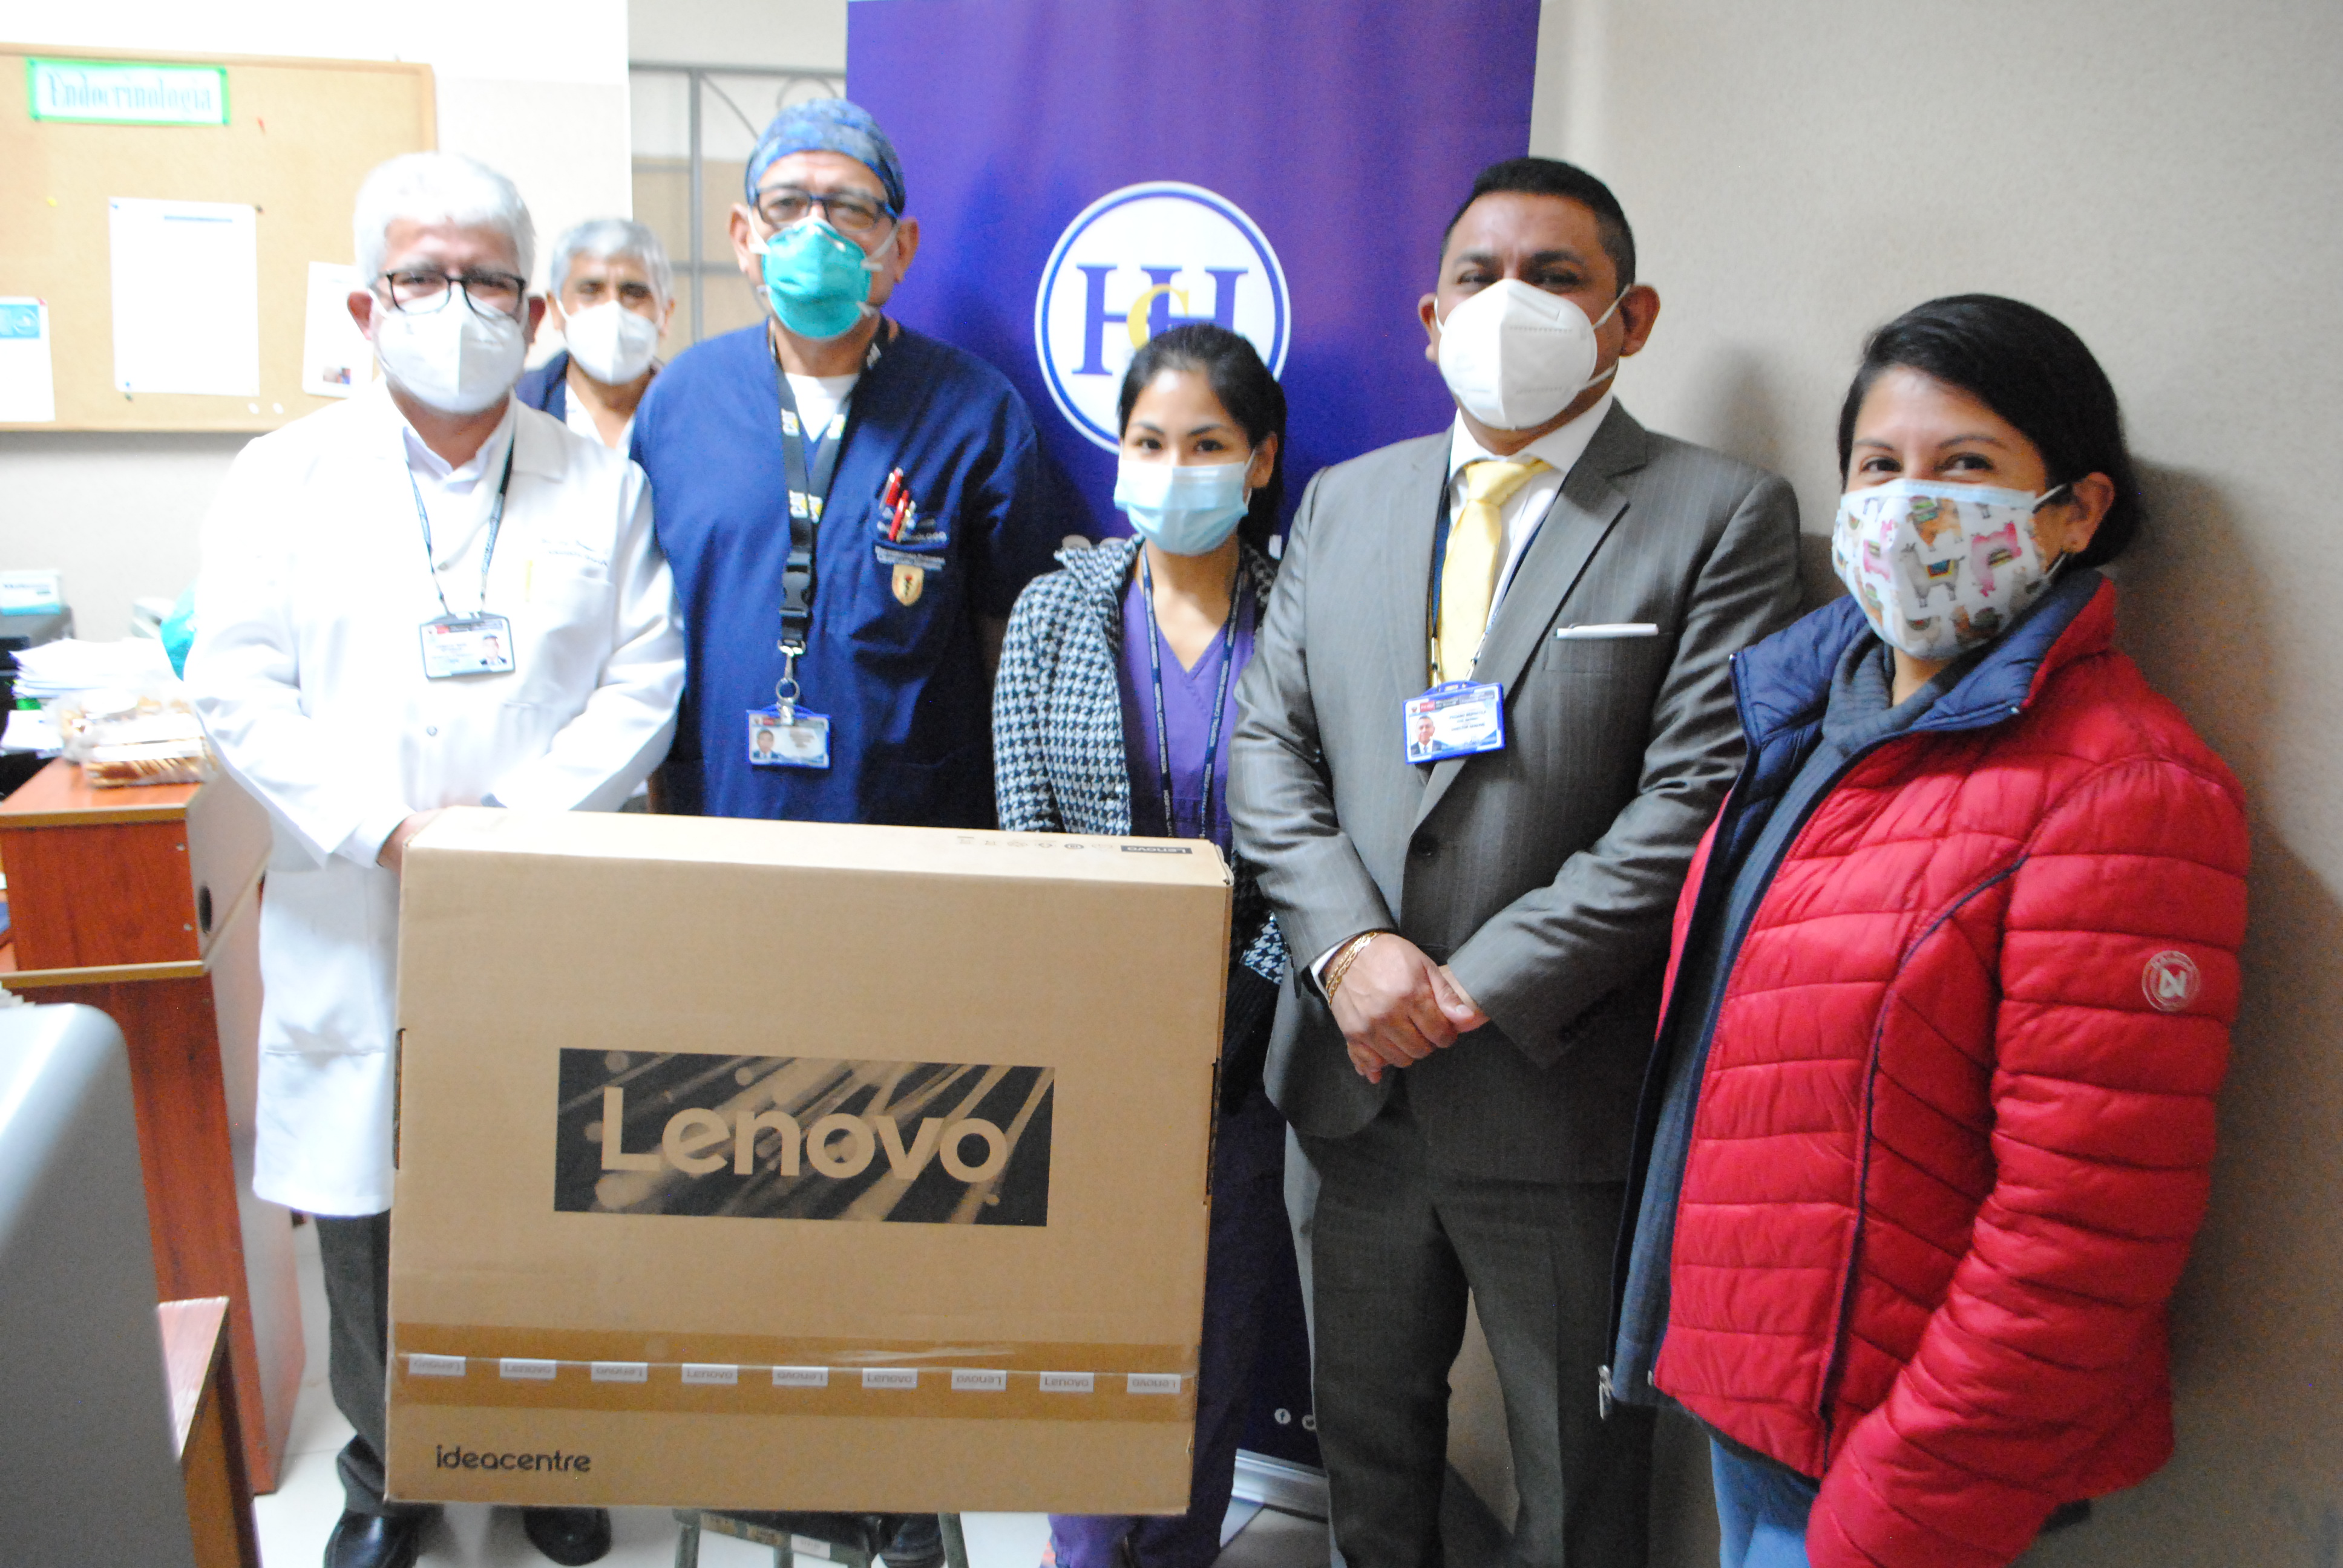 Imagen de la doctora Carmen Rosa Zuloaga Salas, médico residente del Servicio de Endocrinología, junto al director del hospital y el personal del servicio